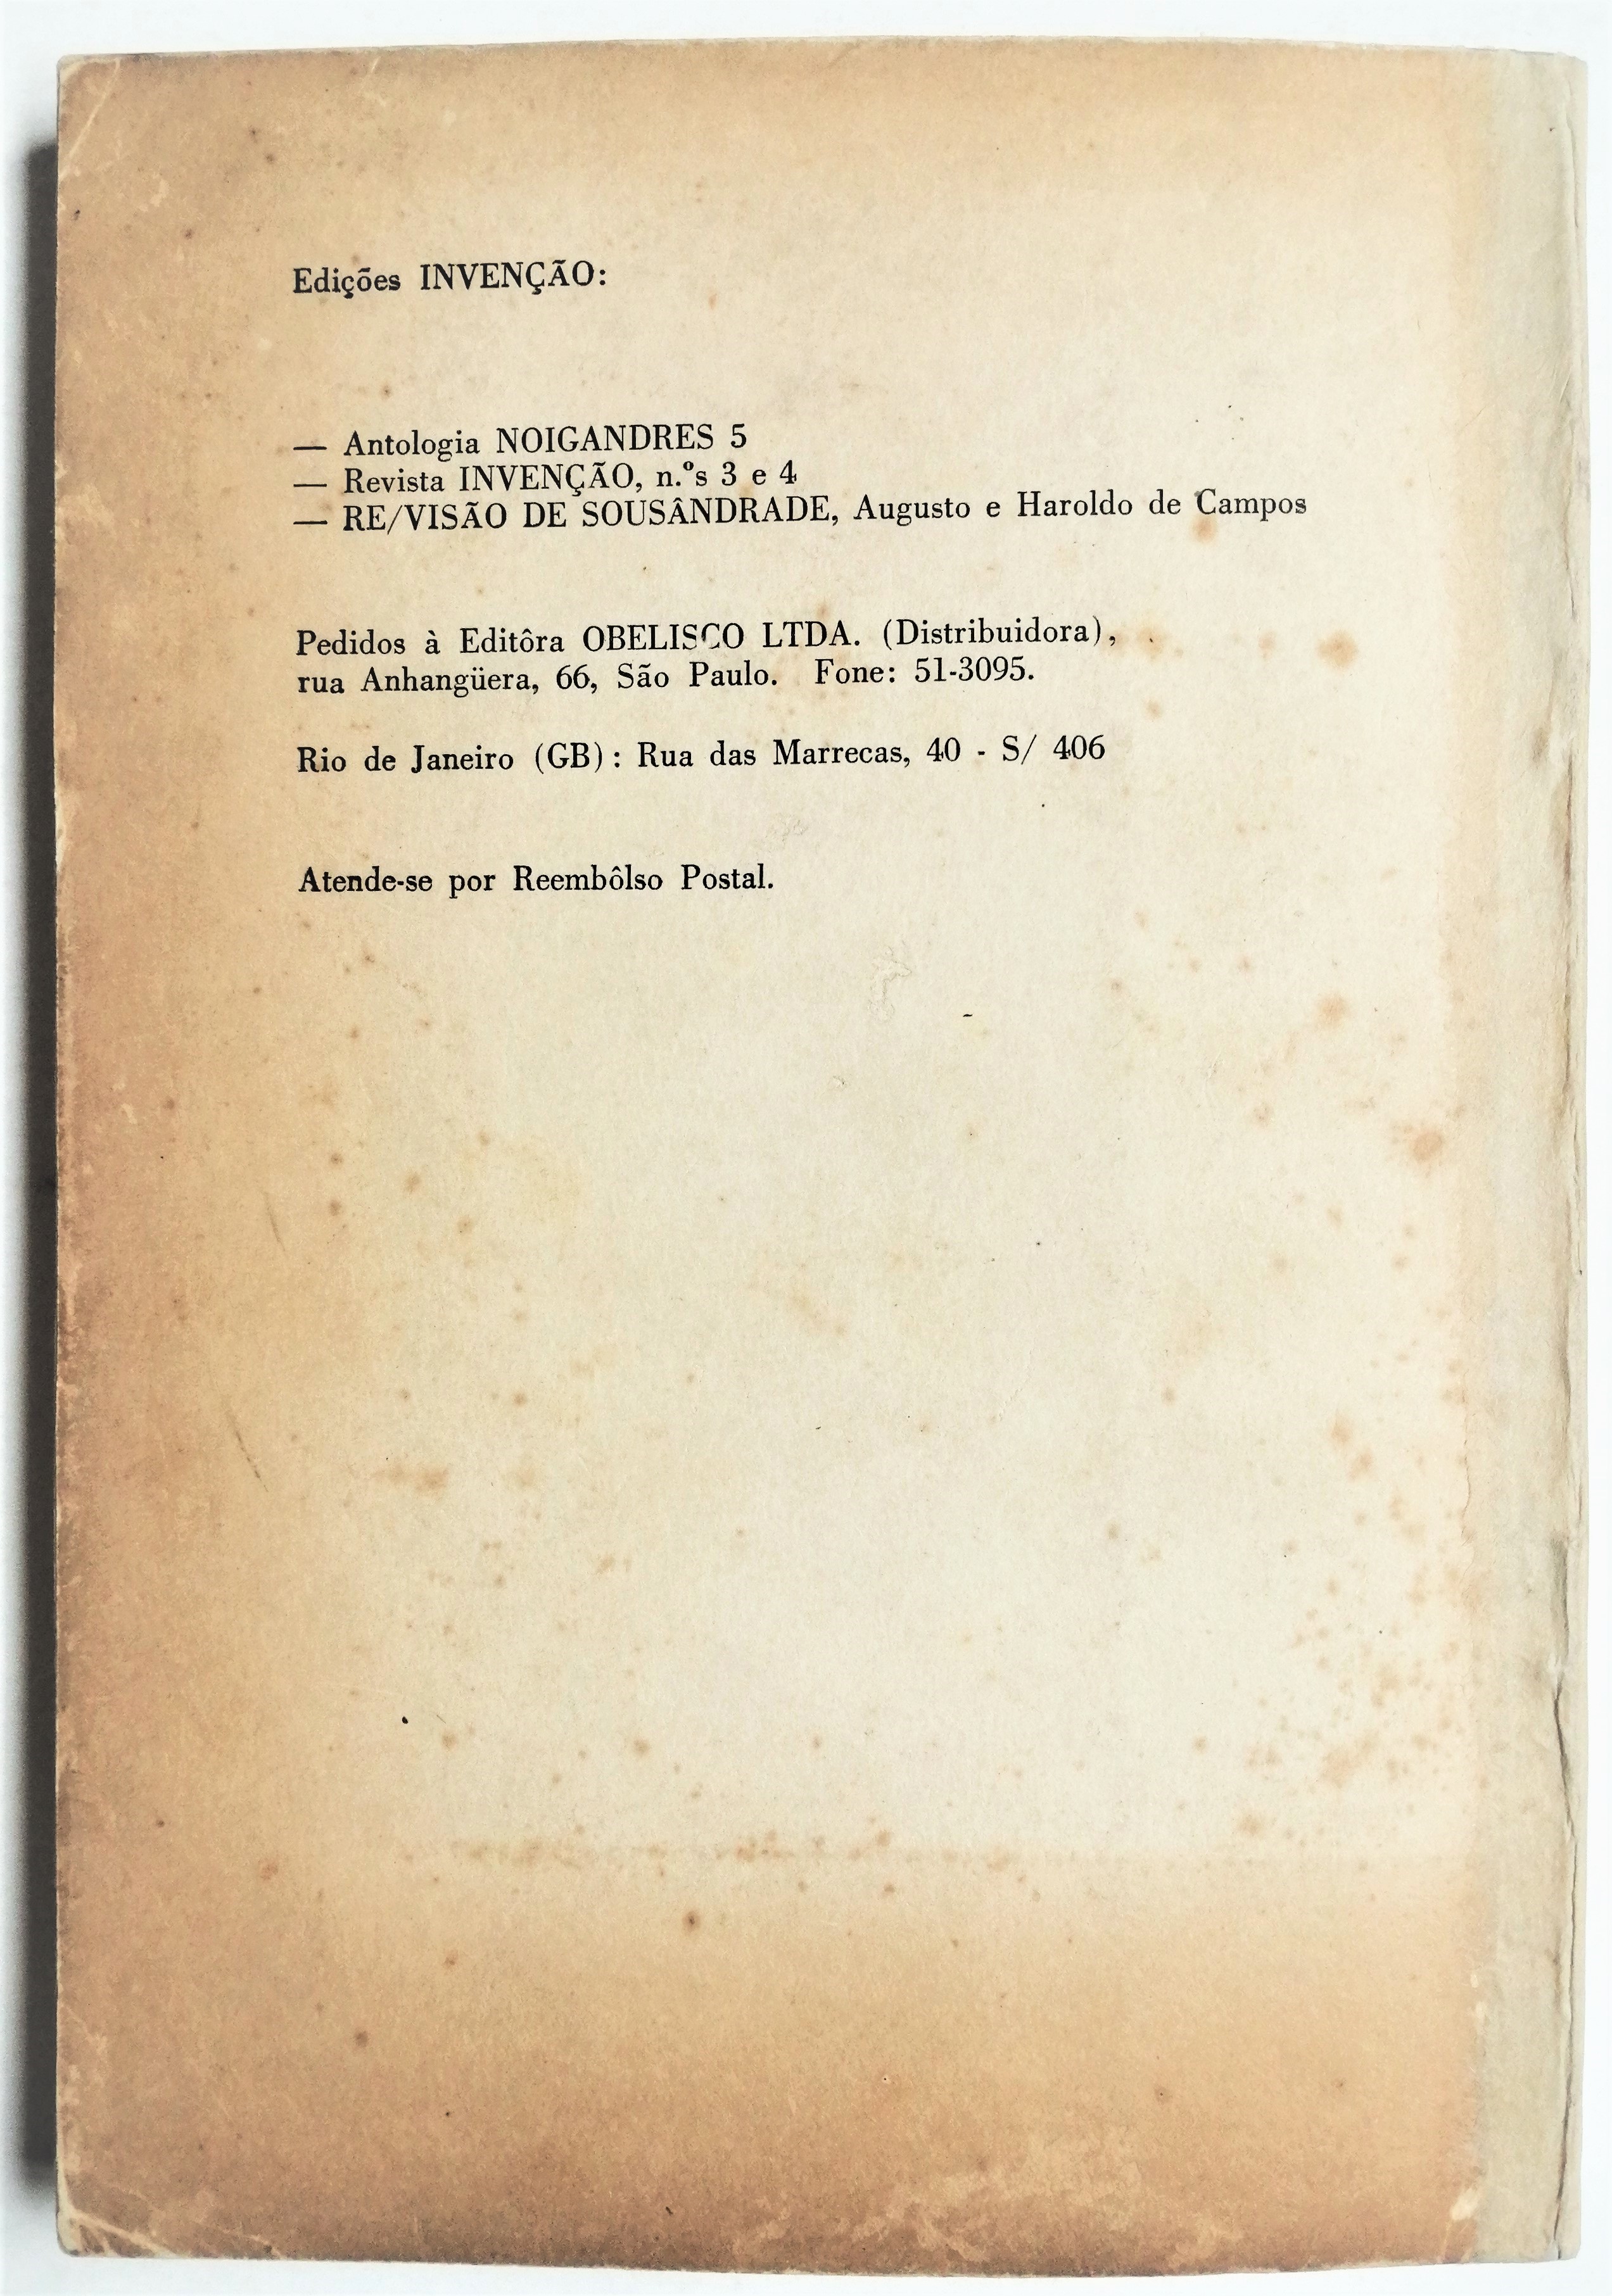 Augusto de Campos, Decio Pignatari, Haroldo de Campos - Teoría da poesía concreta